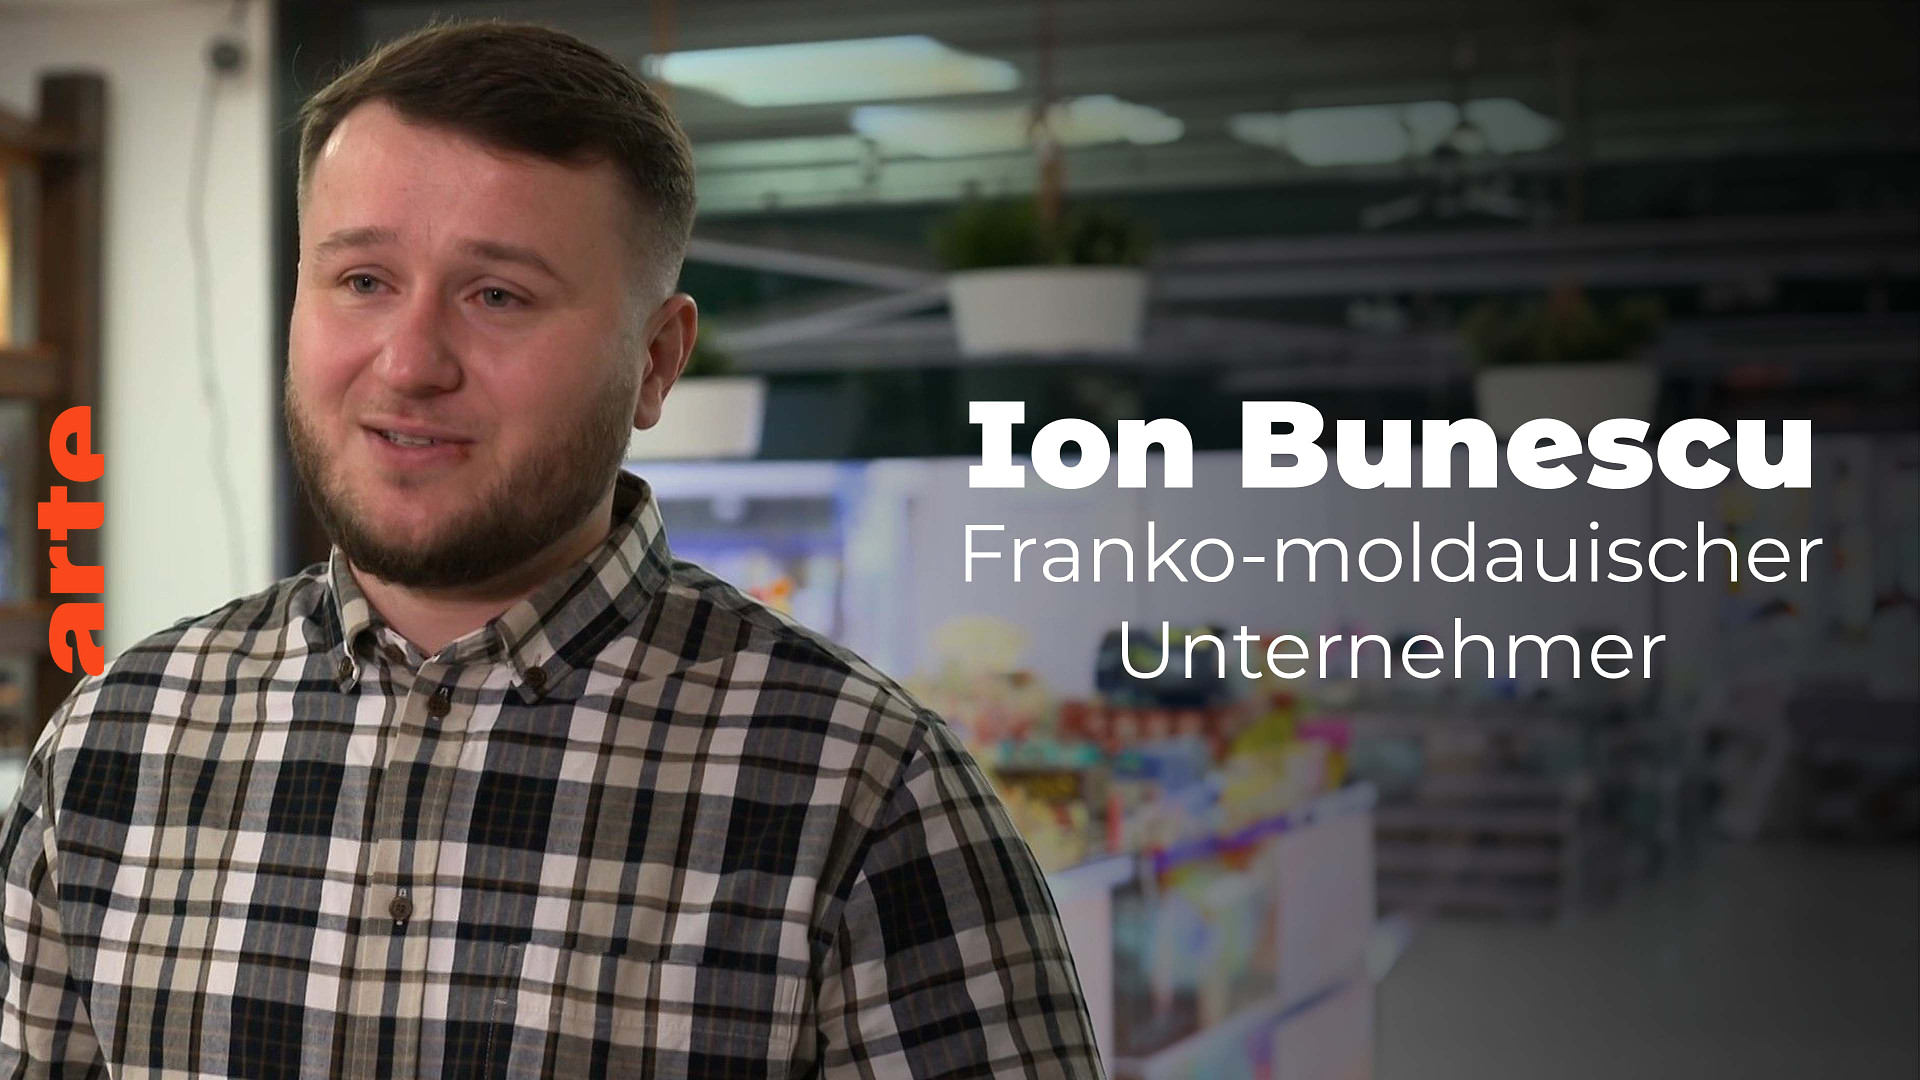 Ion Bonescu, franko-moldauischer Unternehmer